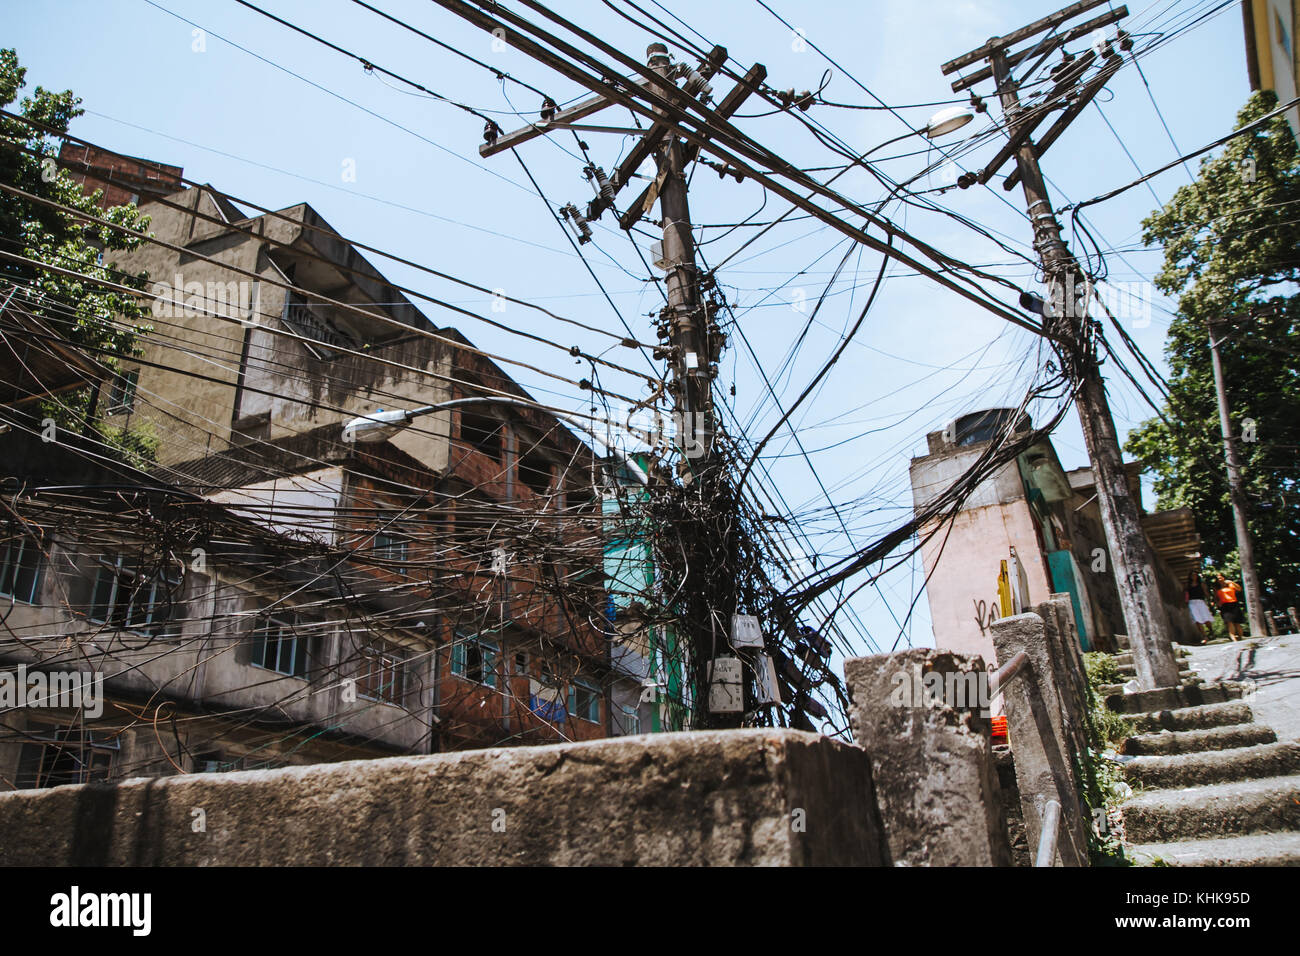 illegal power lines in the rocinha favela of rio de janeiro, brazil Stock Photo